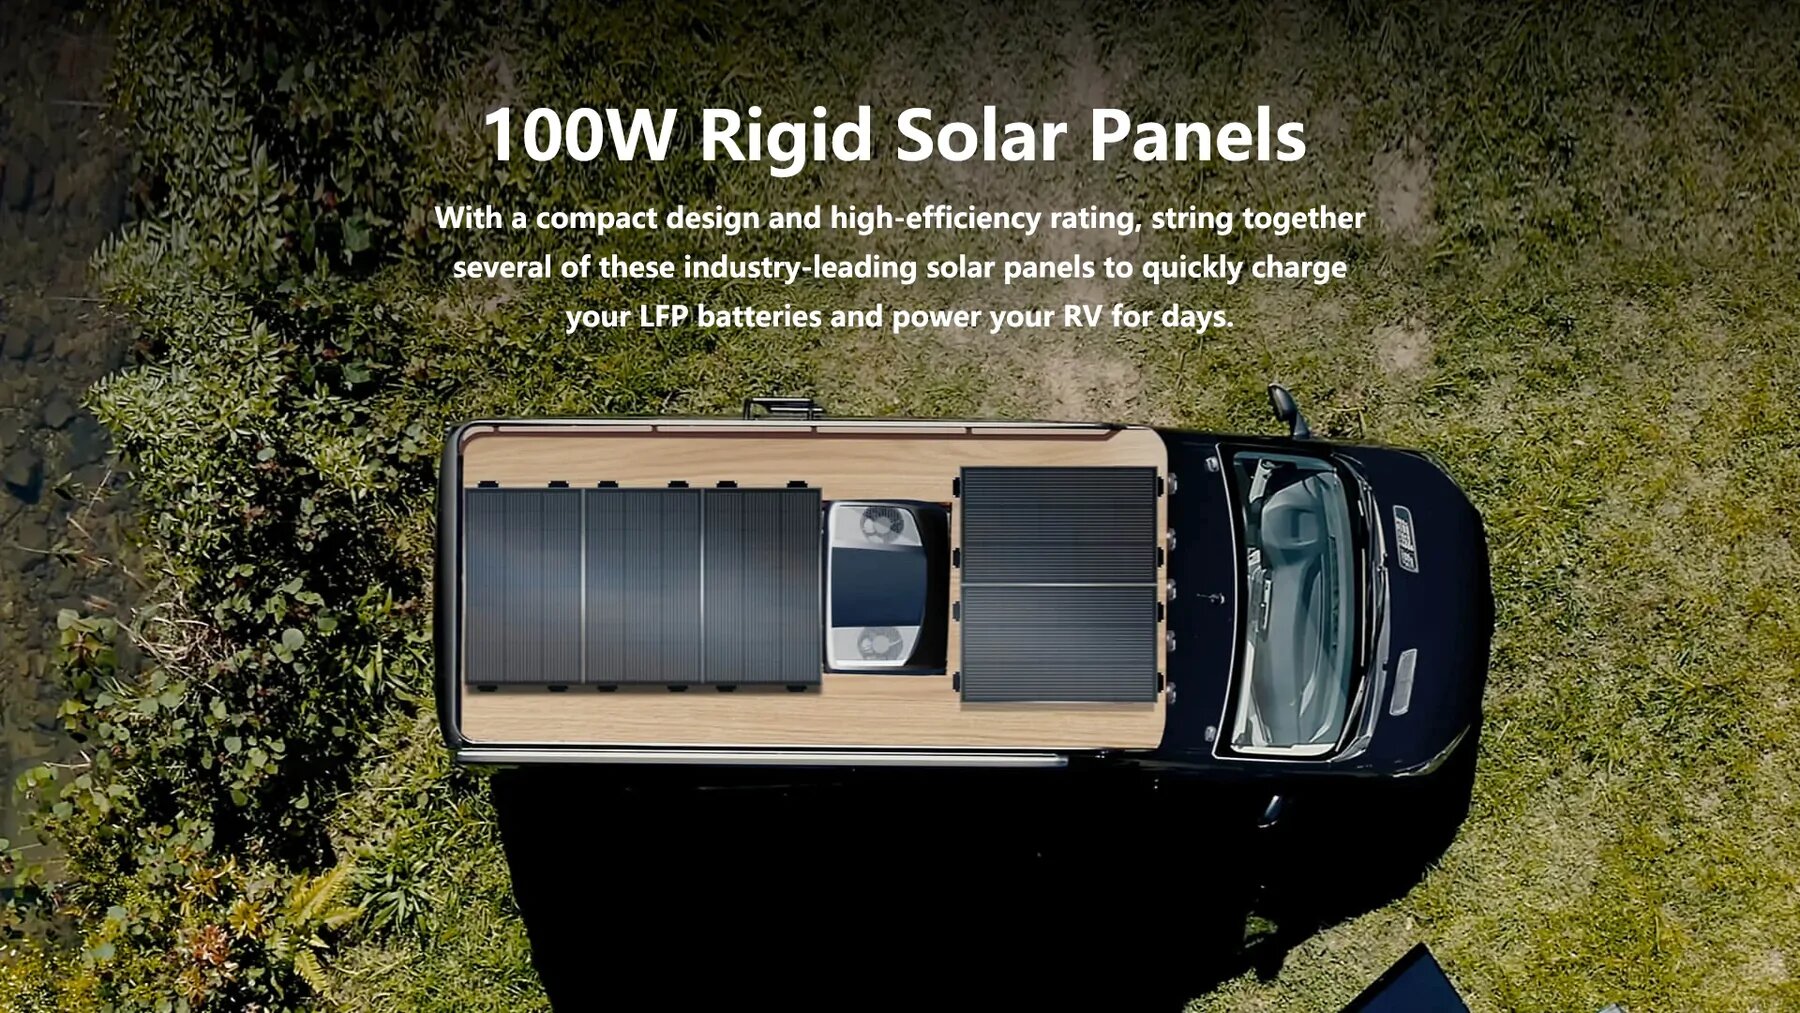 100% di acquisti sicuri Garanzia affidabile Consegna gratuita Pannello solare rigido EcoFlow da 100 W